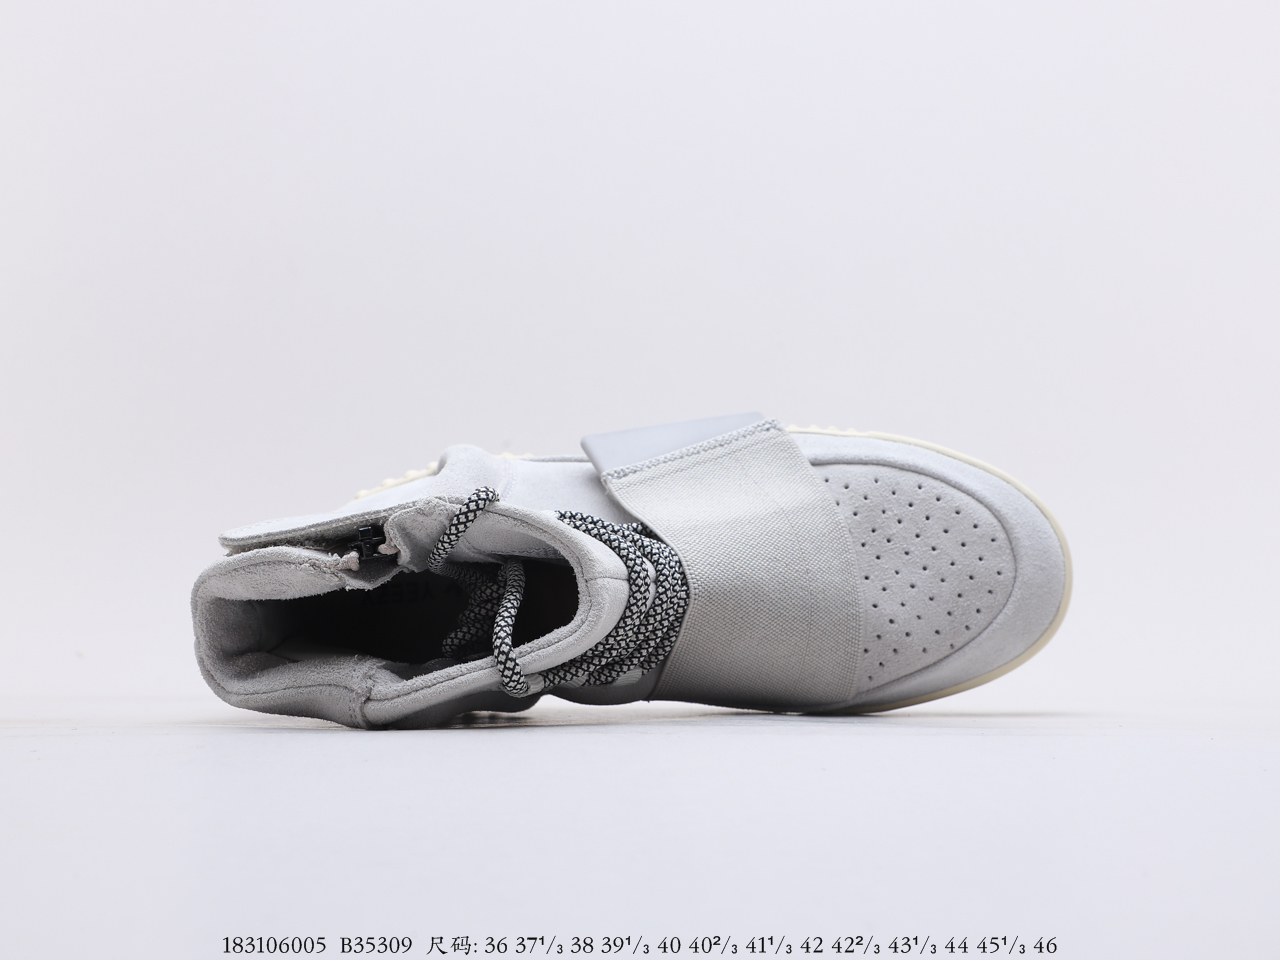 莆田鞋阿迪达斯Adidas YEEZY 750 Boost 初代 高帮 Yeezy 椰子750 Boost初代高帮百搭运动休闲球鞋(图3)